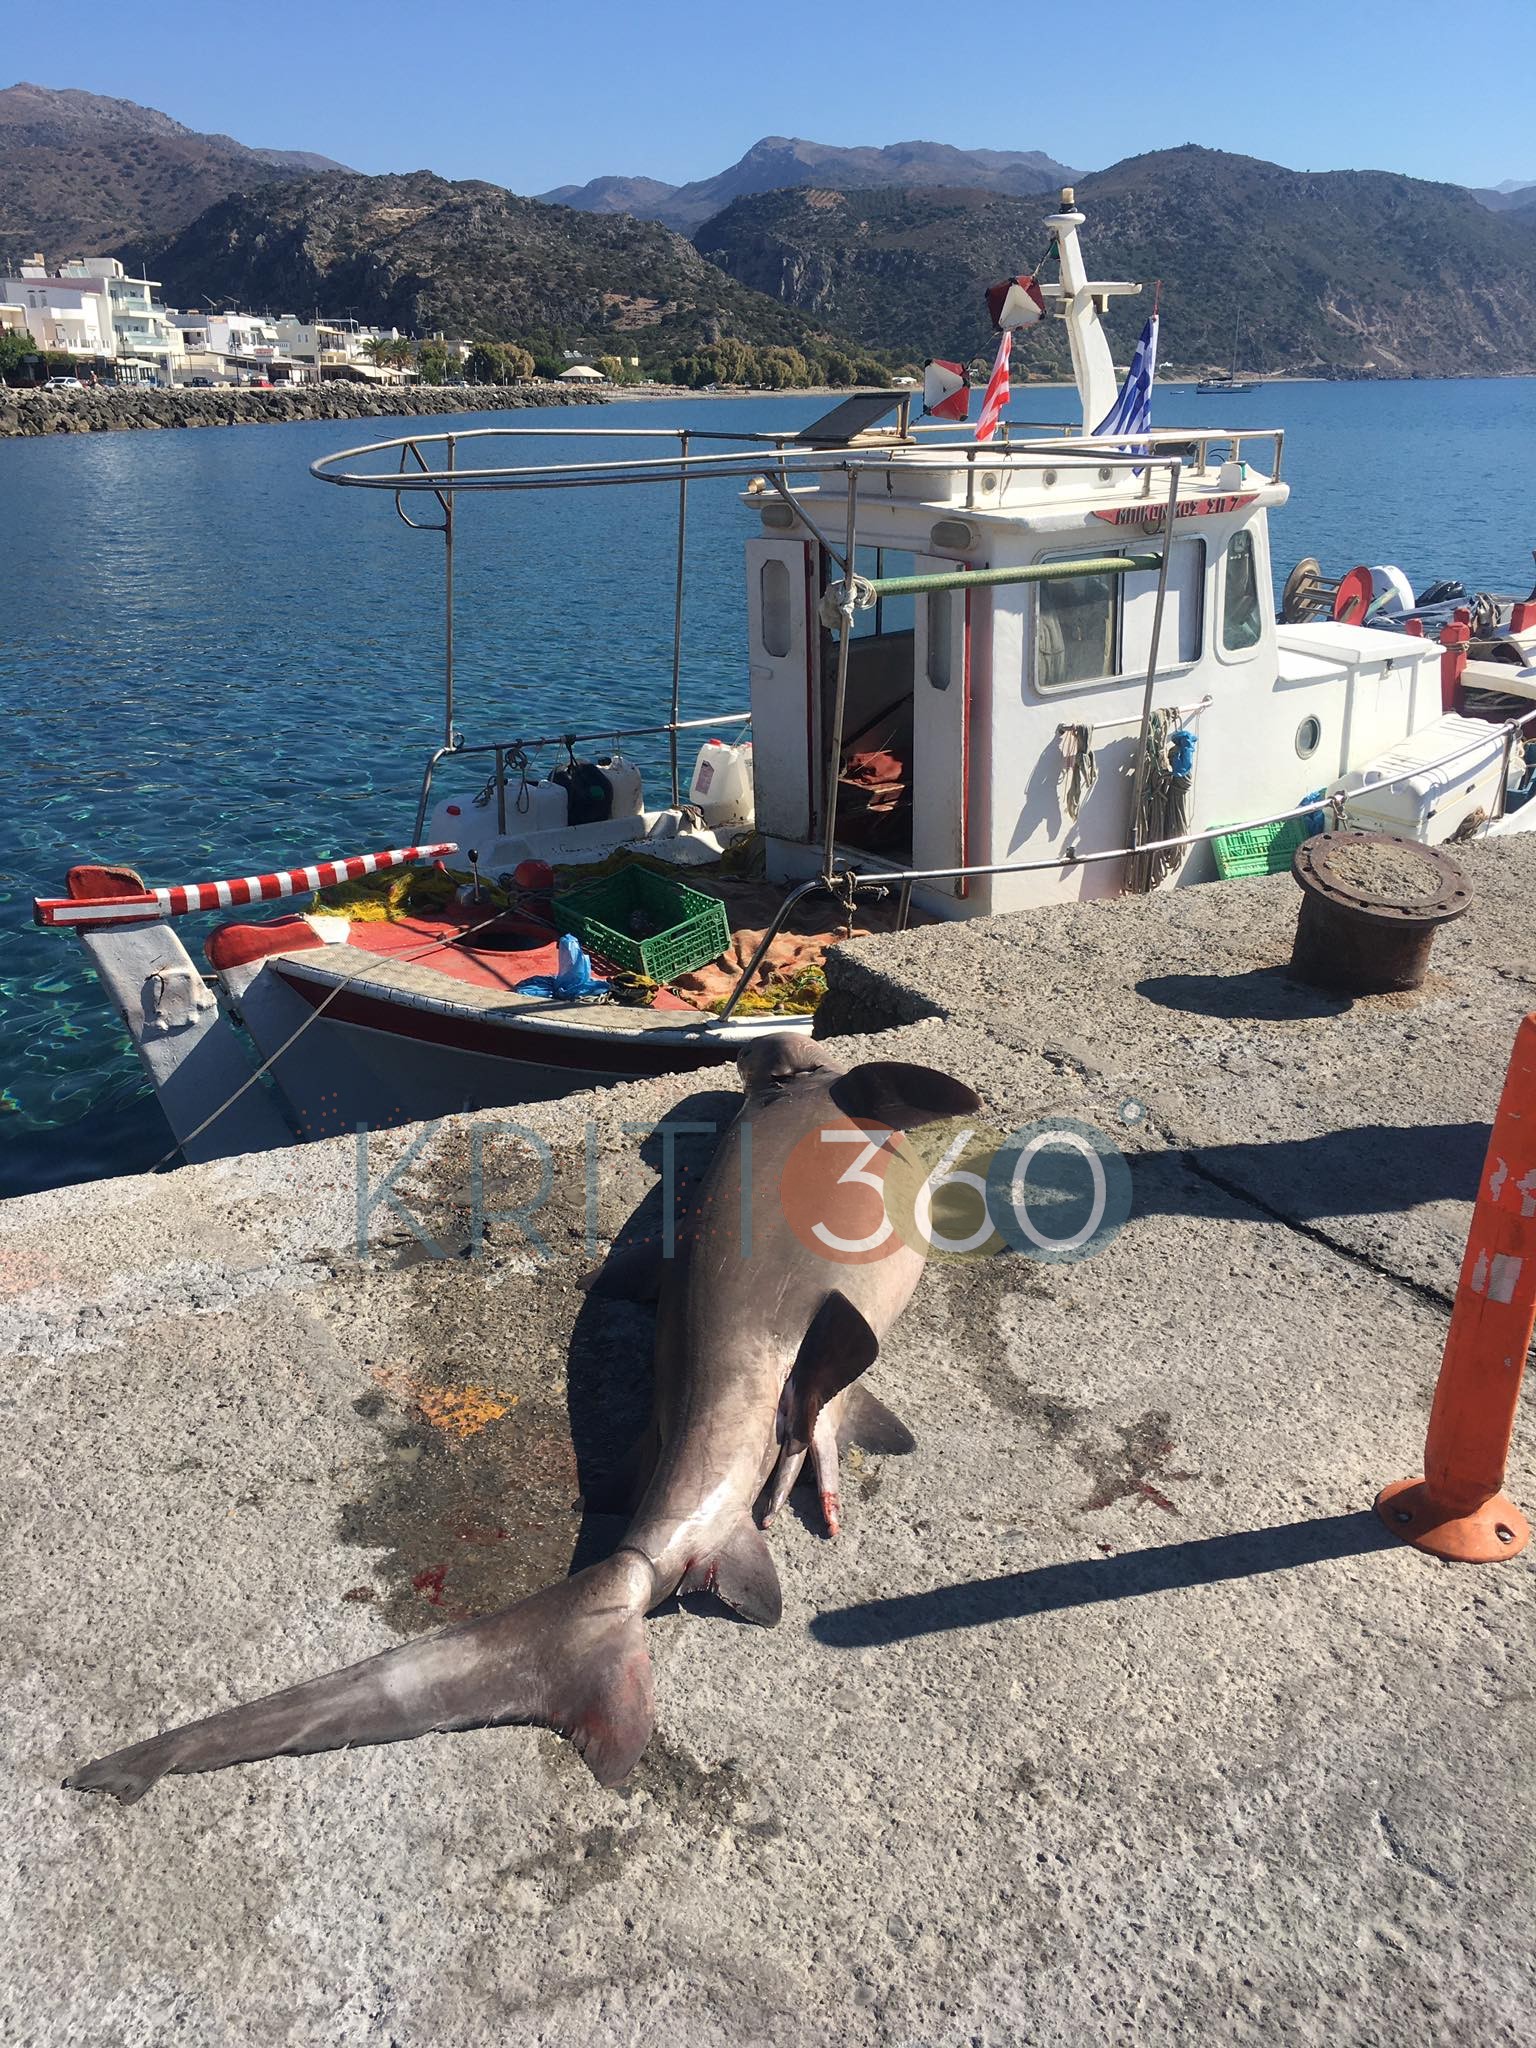 Κρήτη: Τα σαγόνια του καρχαρία στη στεριά μαγνήτισαν όλα τα βλέμματα – Δείτε την ψαριά της ζωής τους